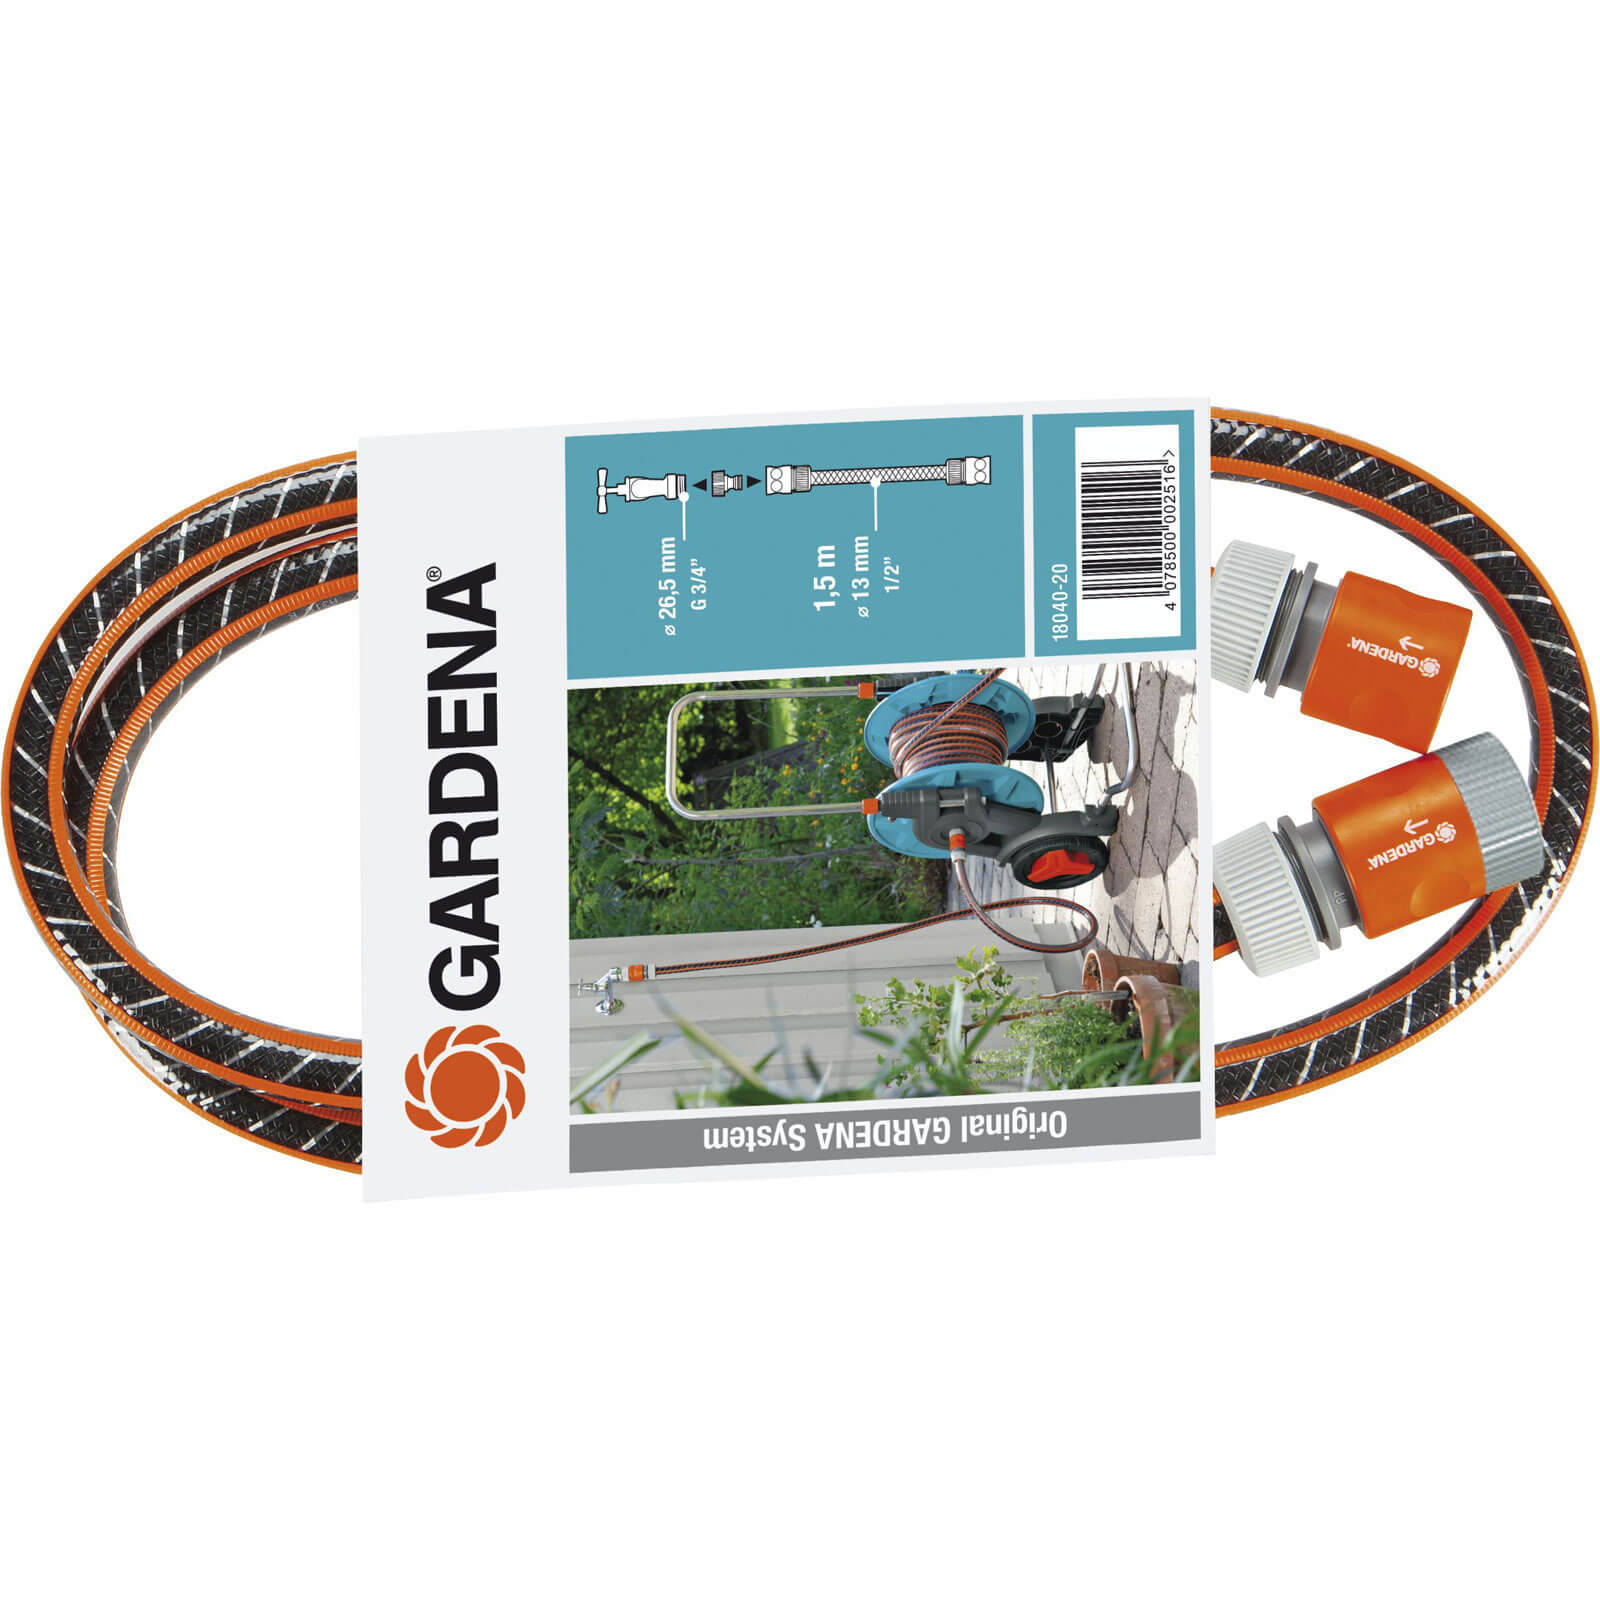 Image of Gardena Flex Hose Reel Connection Set 1/2" / 12.5mm 1.5m Grey & Orange